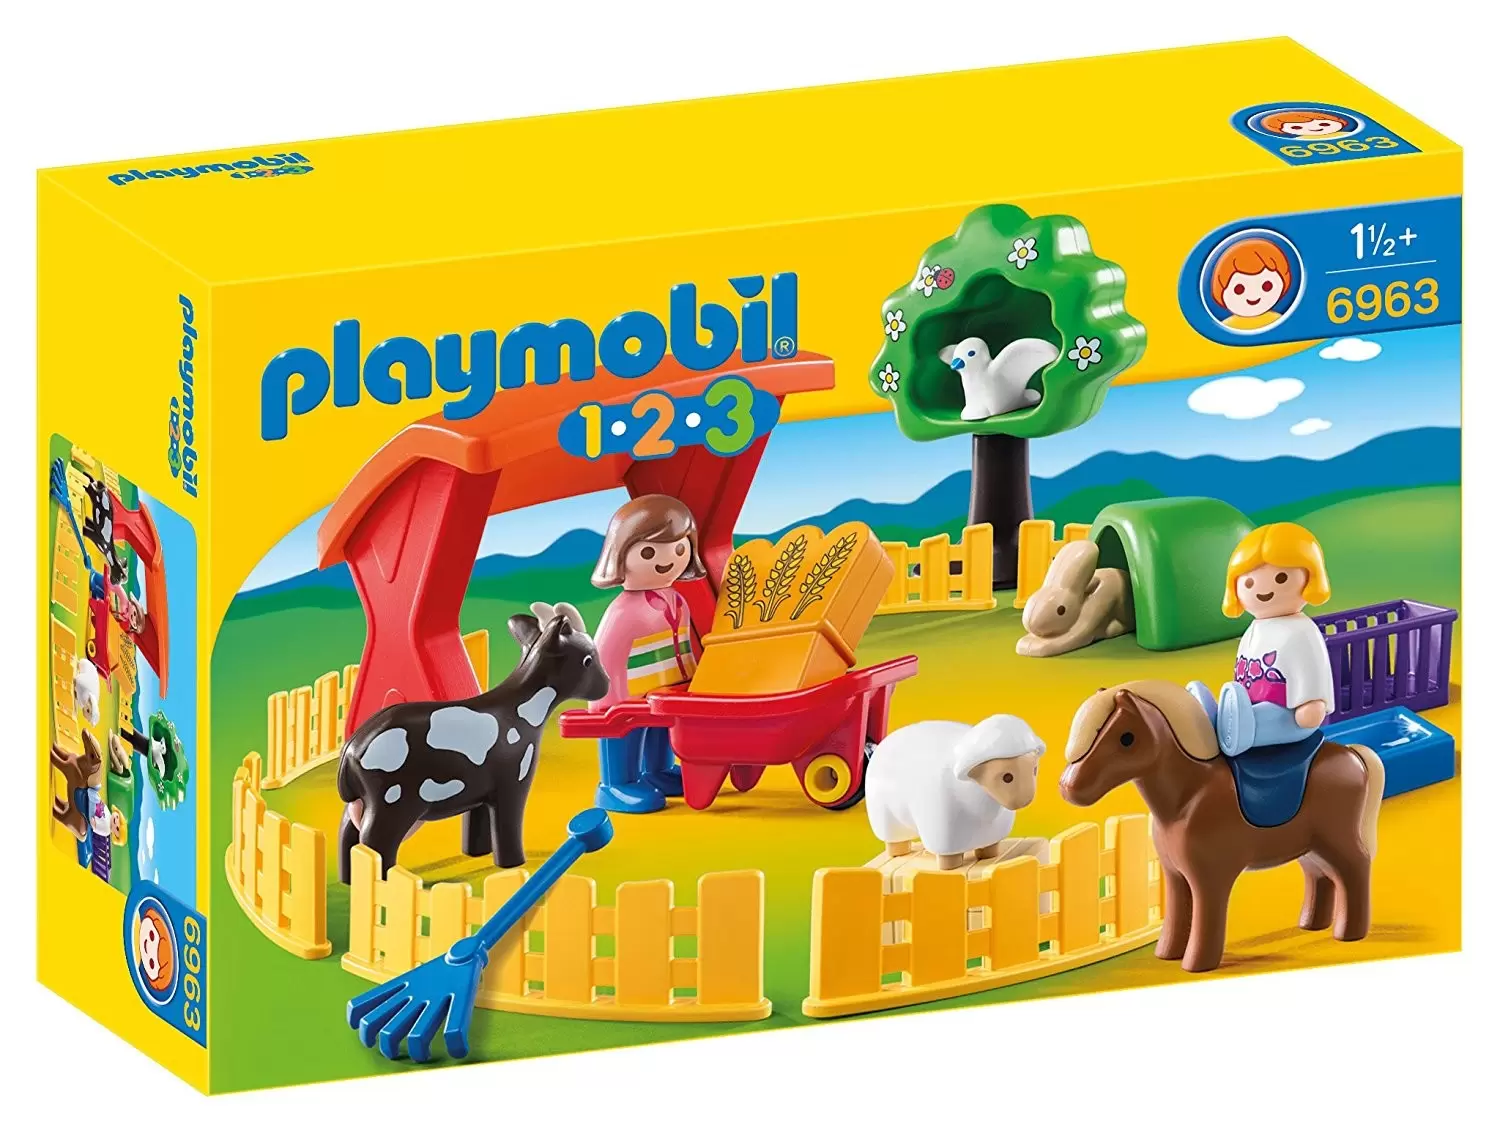 ② Playmobil 123 ferme transportable avec fermier et tracteur — Jouets